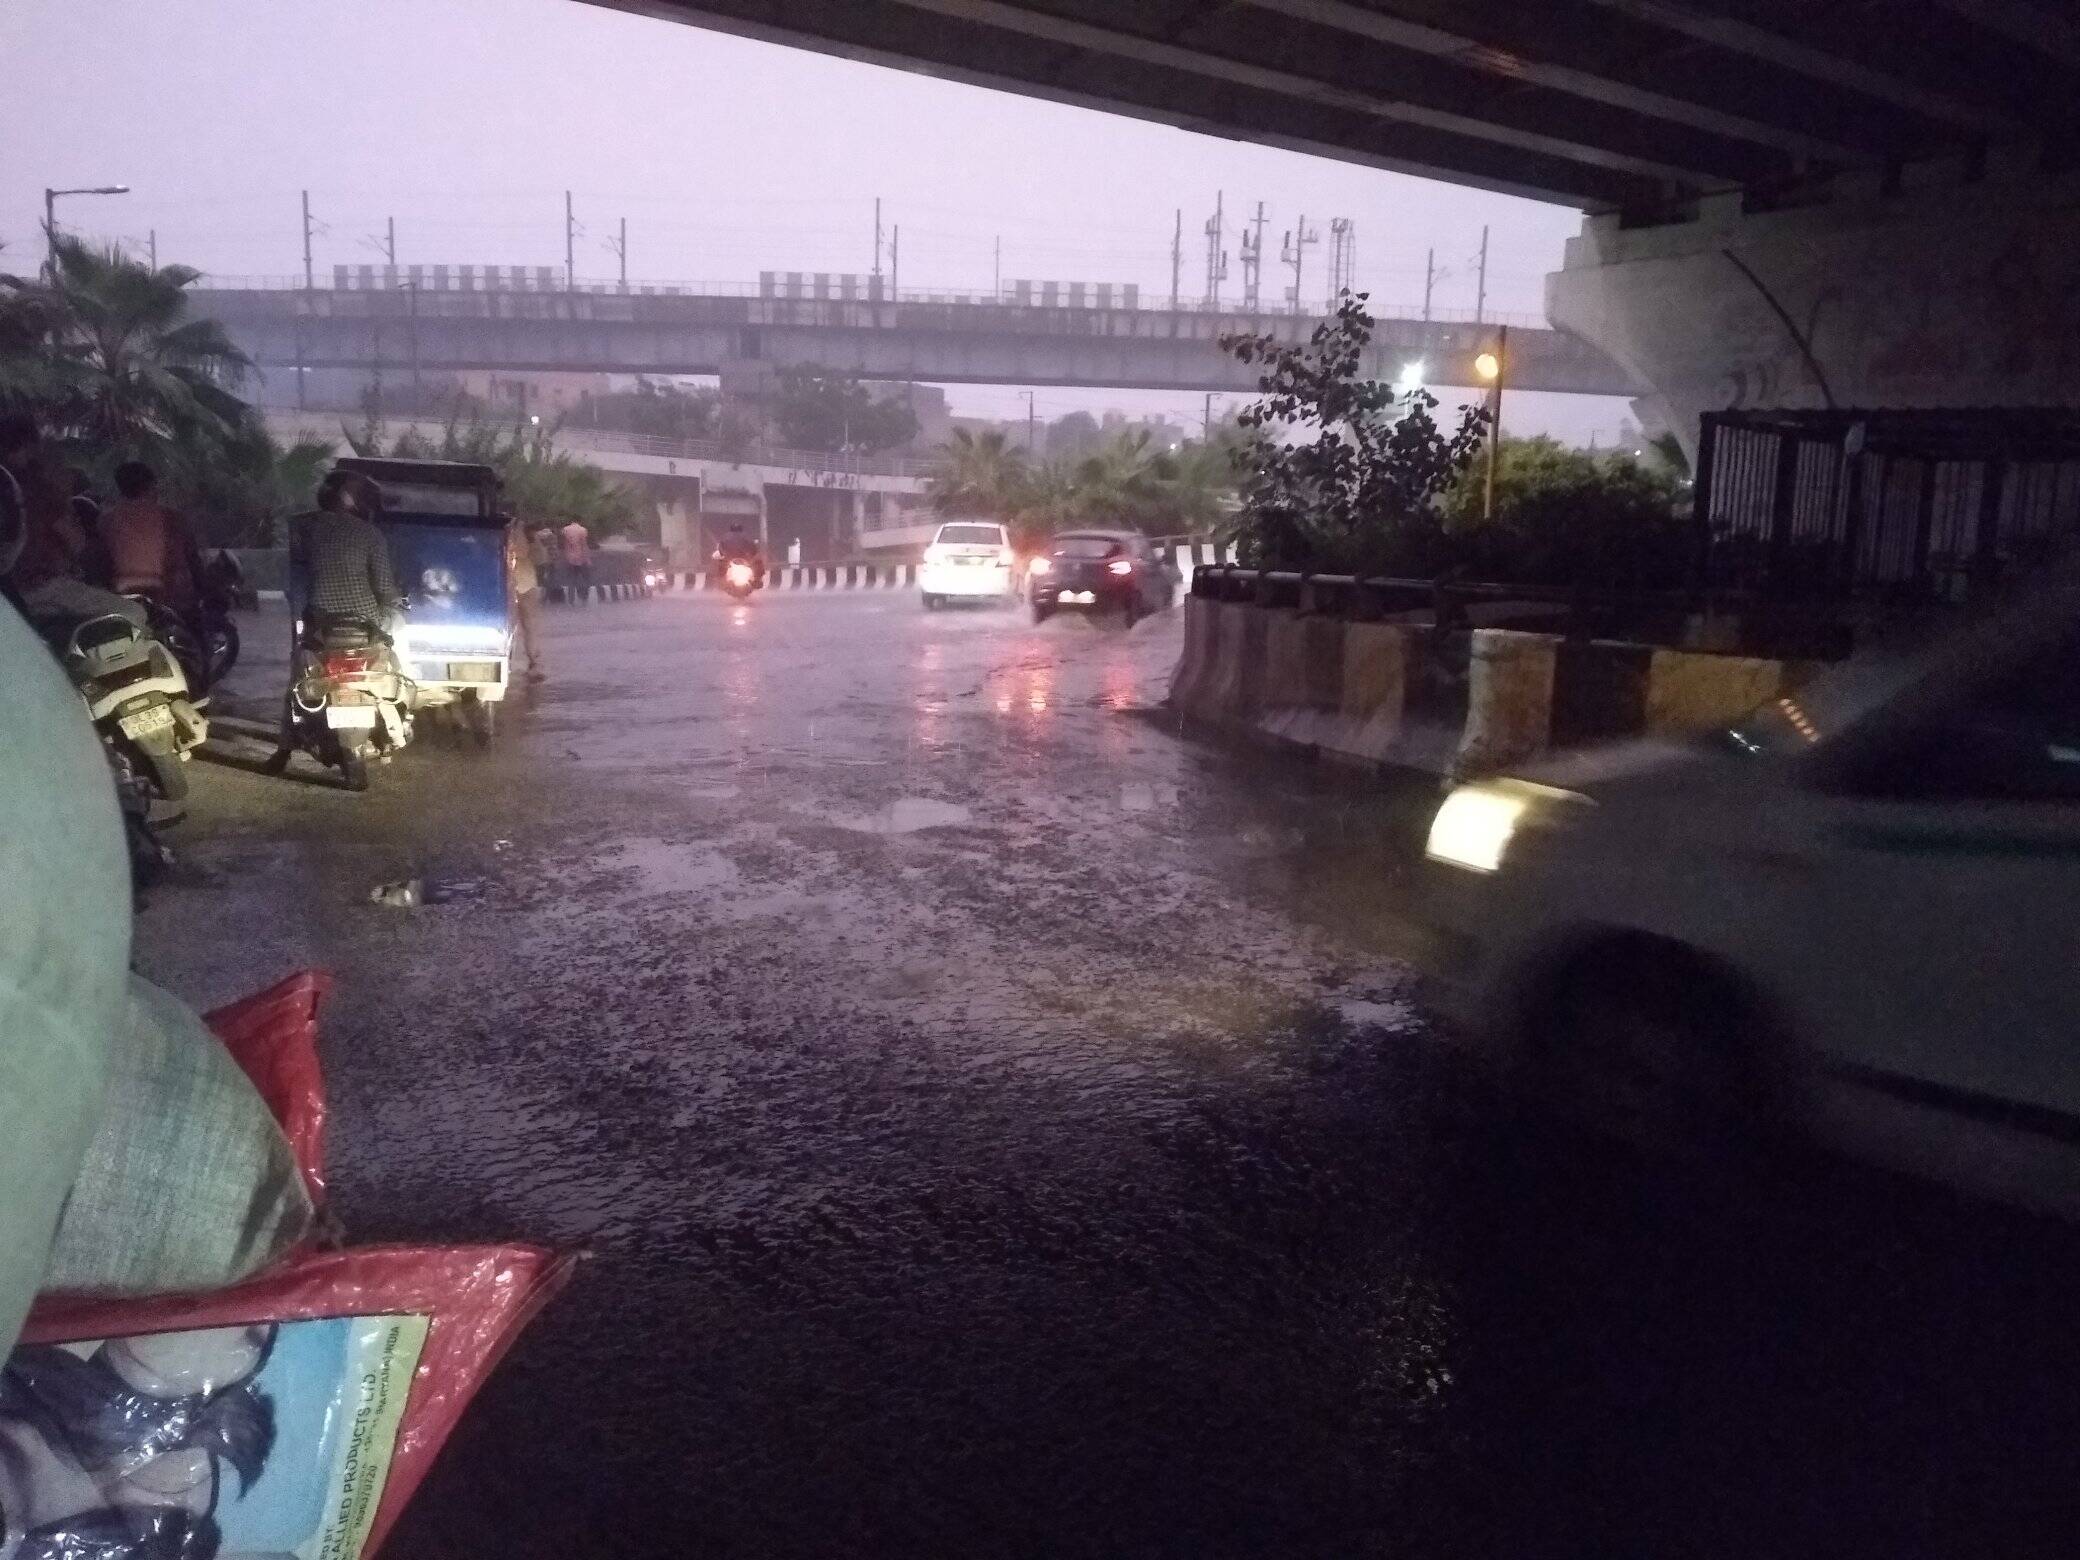 देशाची राजधानी असलेल्या नवी दिल्लीत गेल्या काही दिवसांपासून पावसाचा जोर अद्याप कायम आहे. त्यामुळे दिल्लीतील अनेक रस्त्या-रस्त्यांवर पाणी साचले आहे. काही ठिकाणी गाड्याही पाण्याखाली गेल्या आहेत.